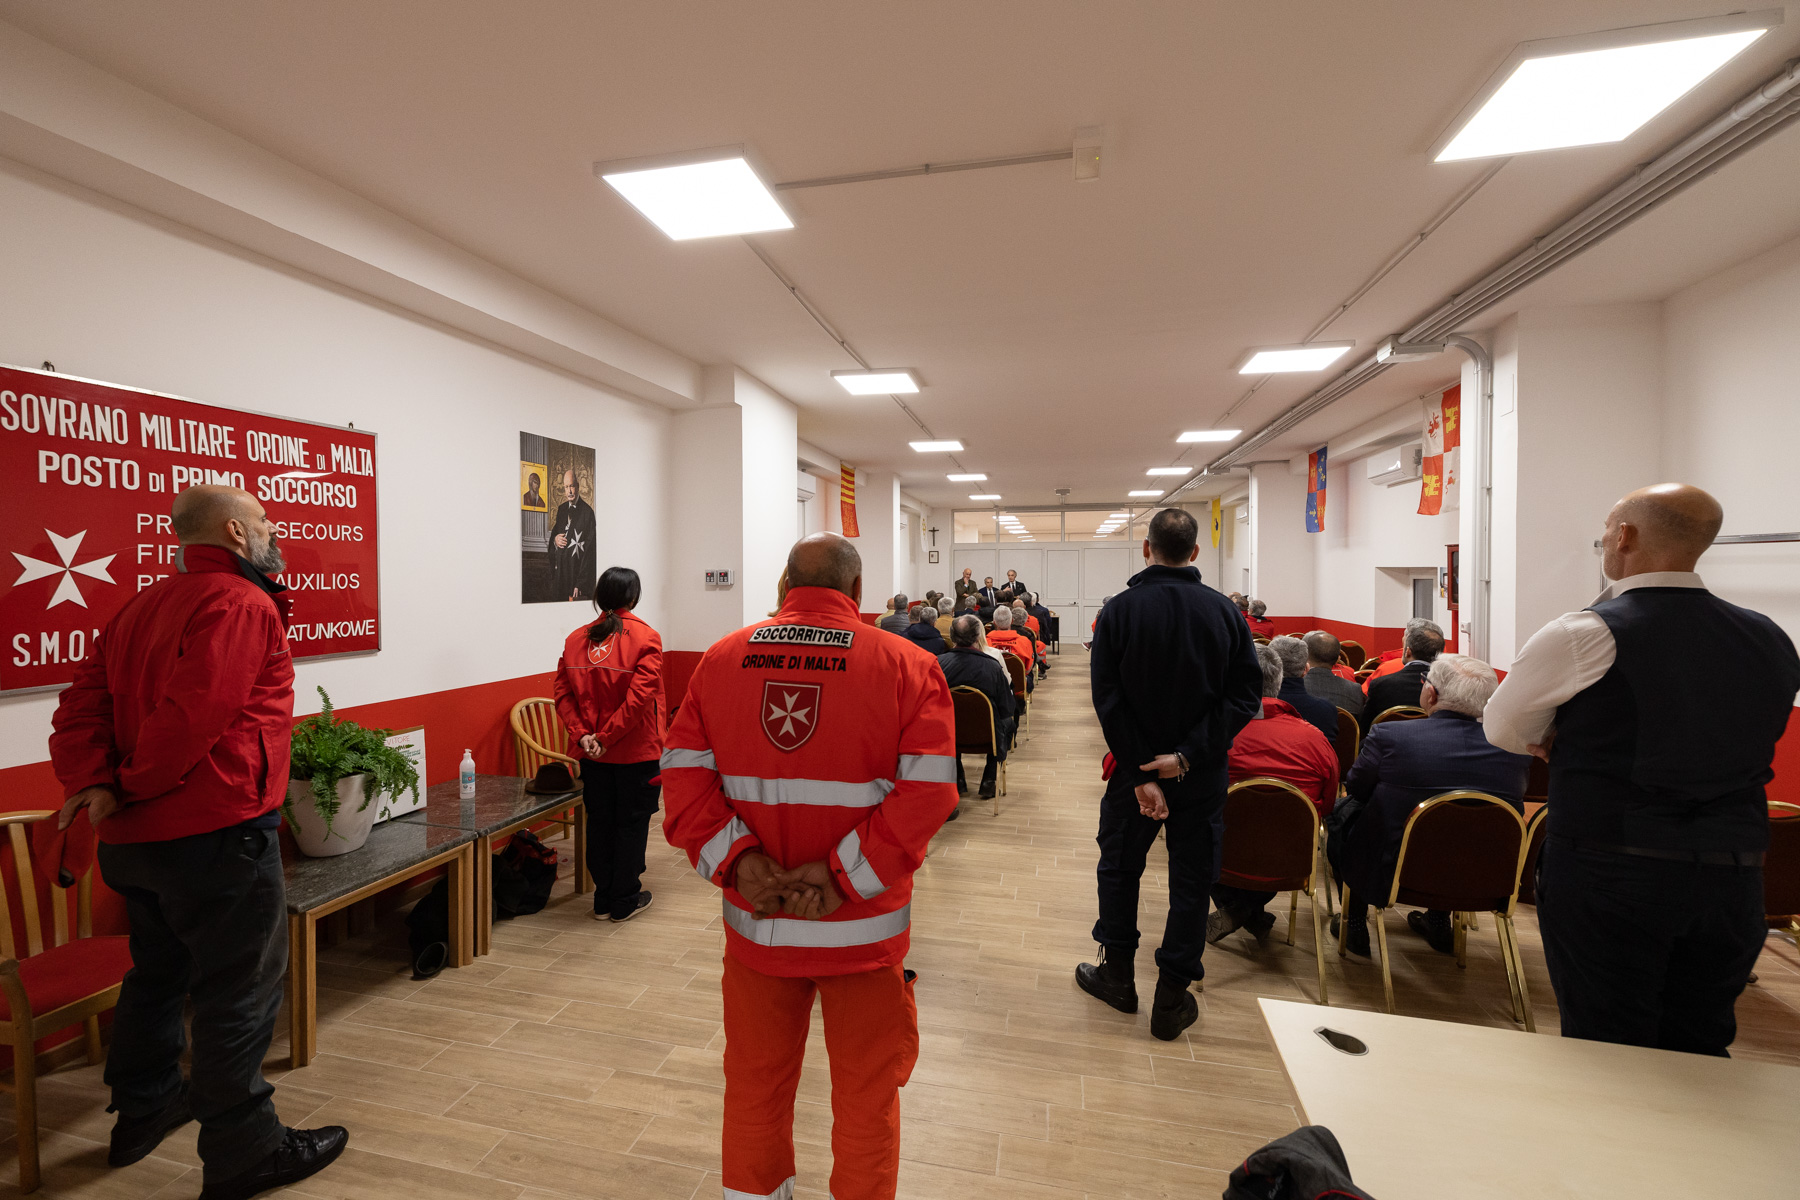 Inauguration d’un nouveau centre d’assistance pour les sans-abri au cœur de Rome